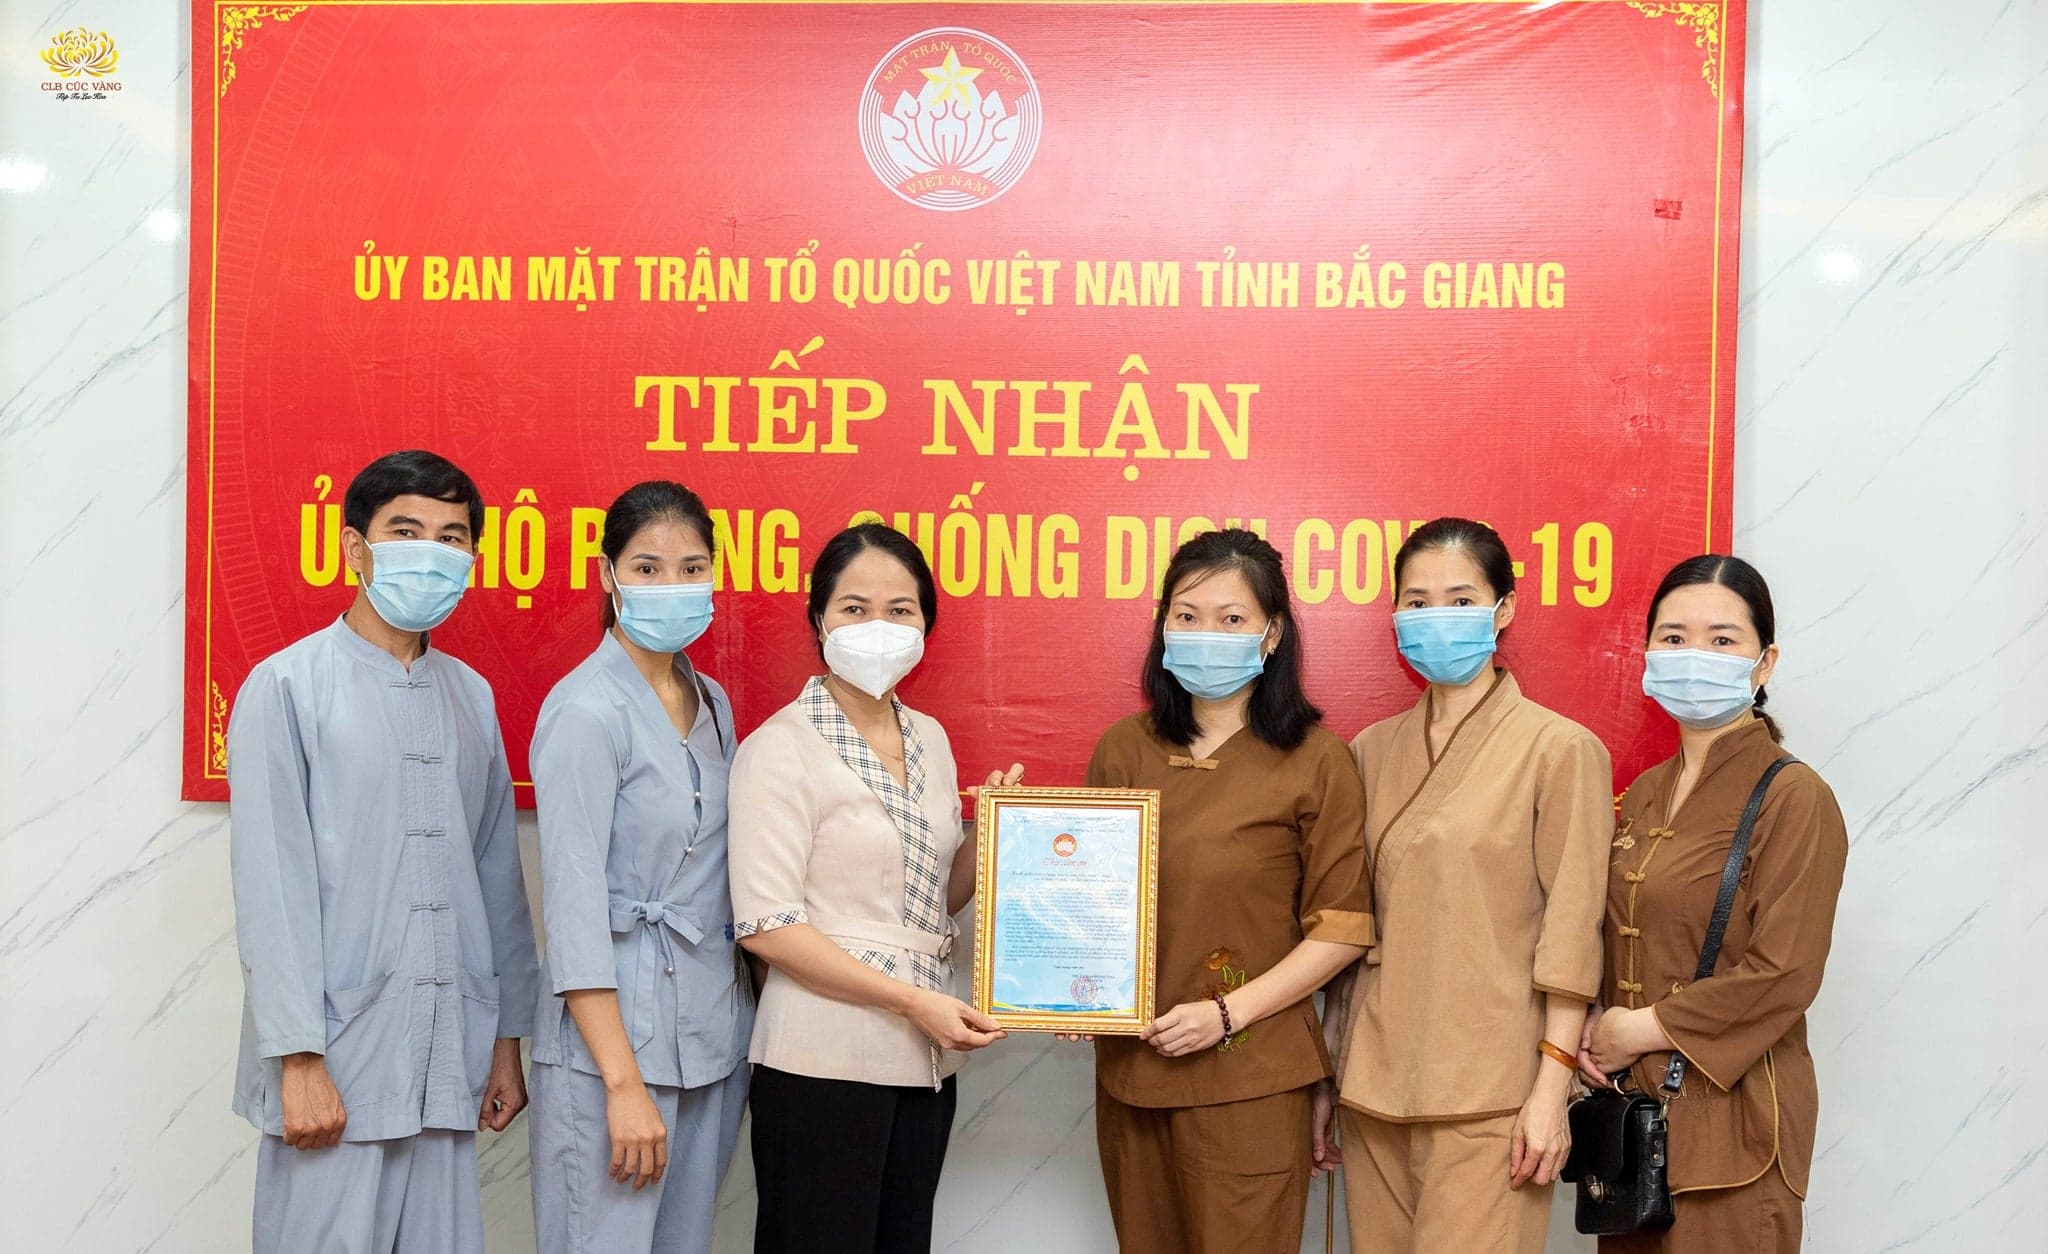 Hướng về Bắc Giang - CLB Cúc Vàng ủng hộ năm trăm triệu đồng cho công tác phòng, chống dịch